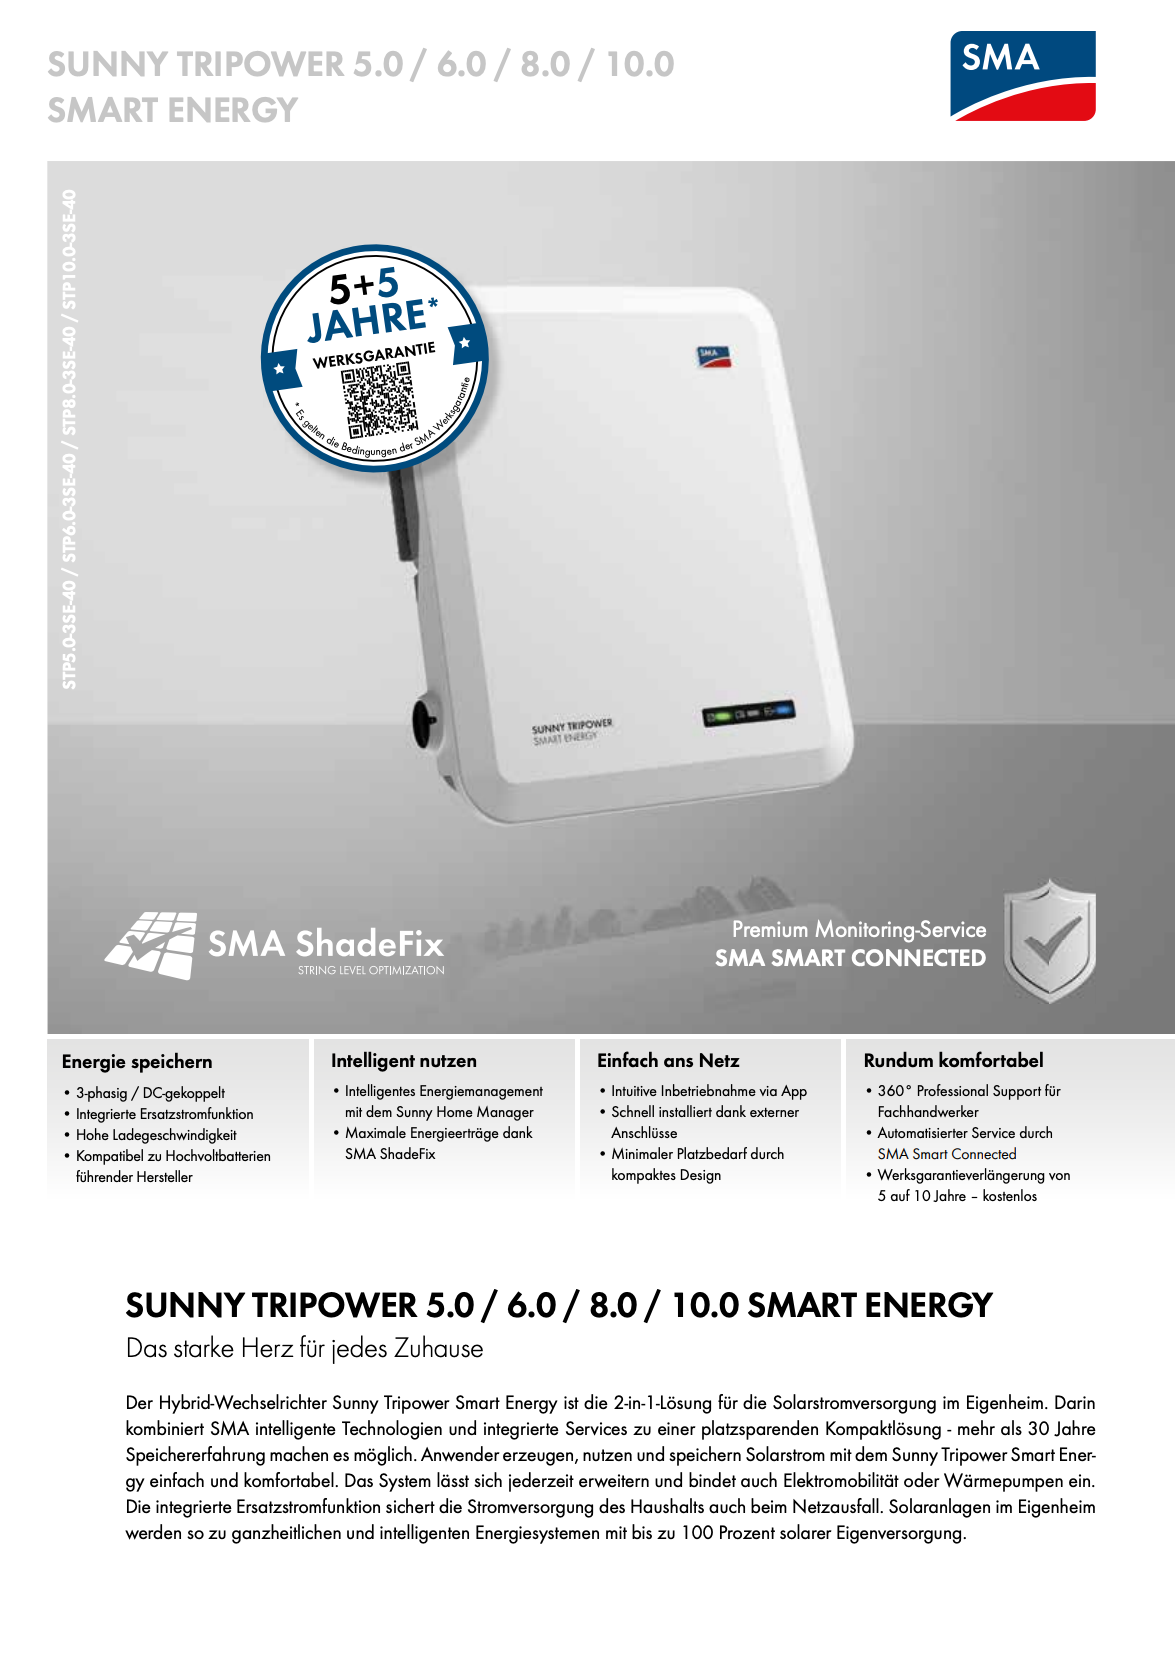 SMA Hybrid-Wechselrichter macht Solarenergienutzung für Haushalte